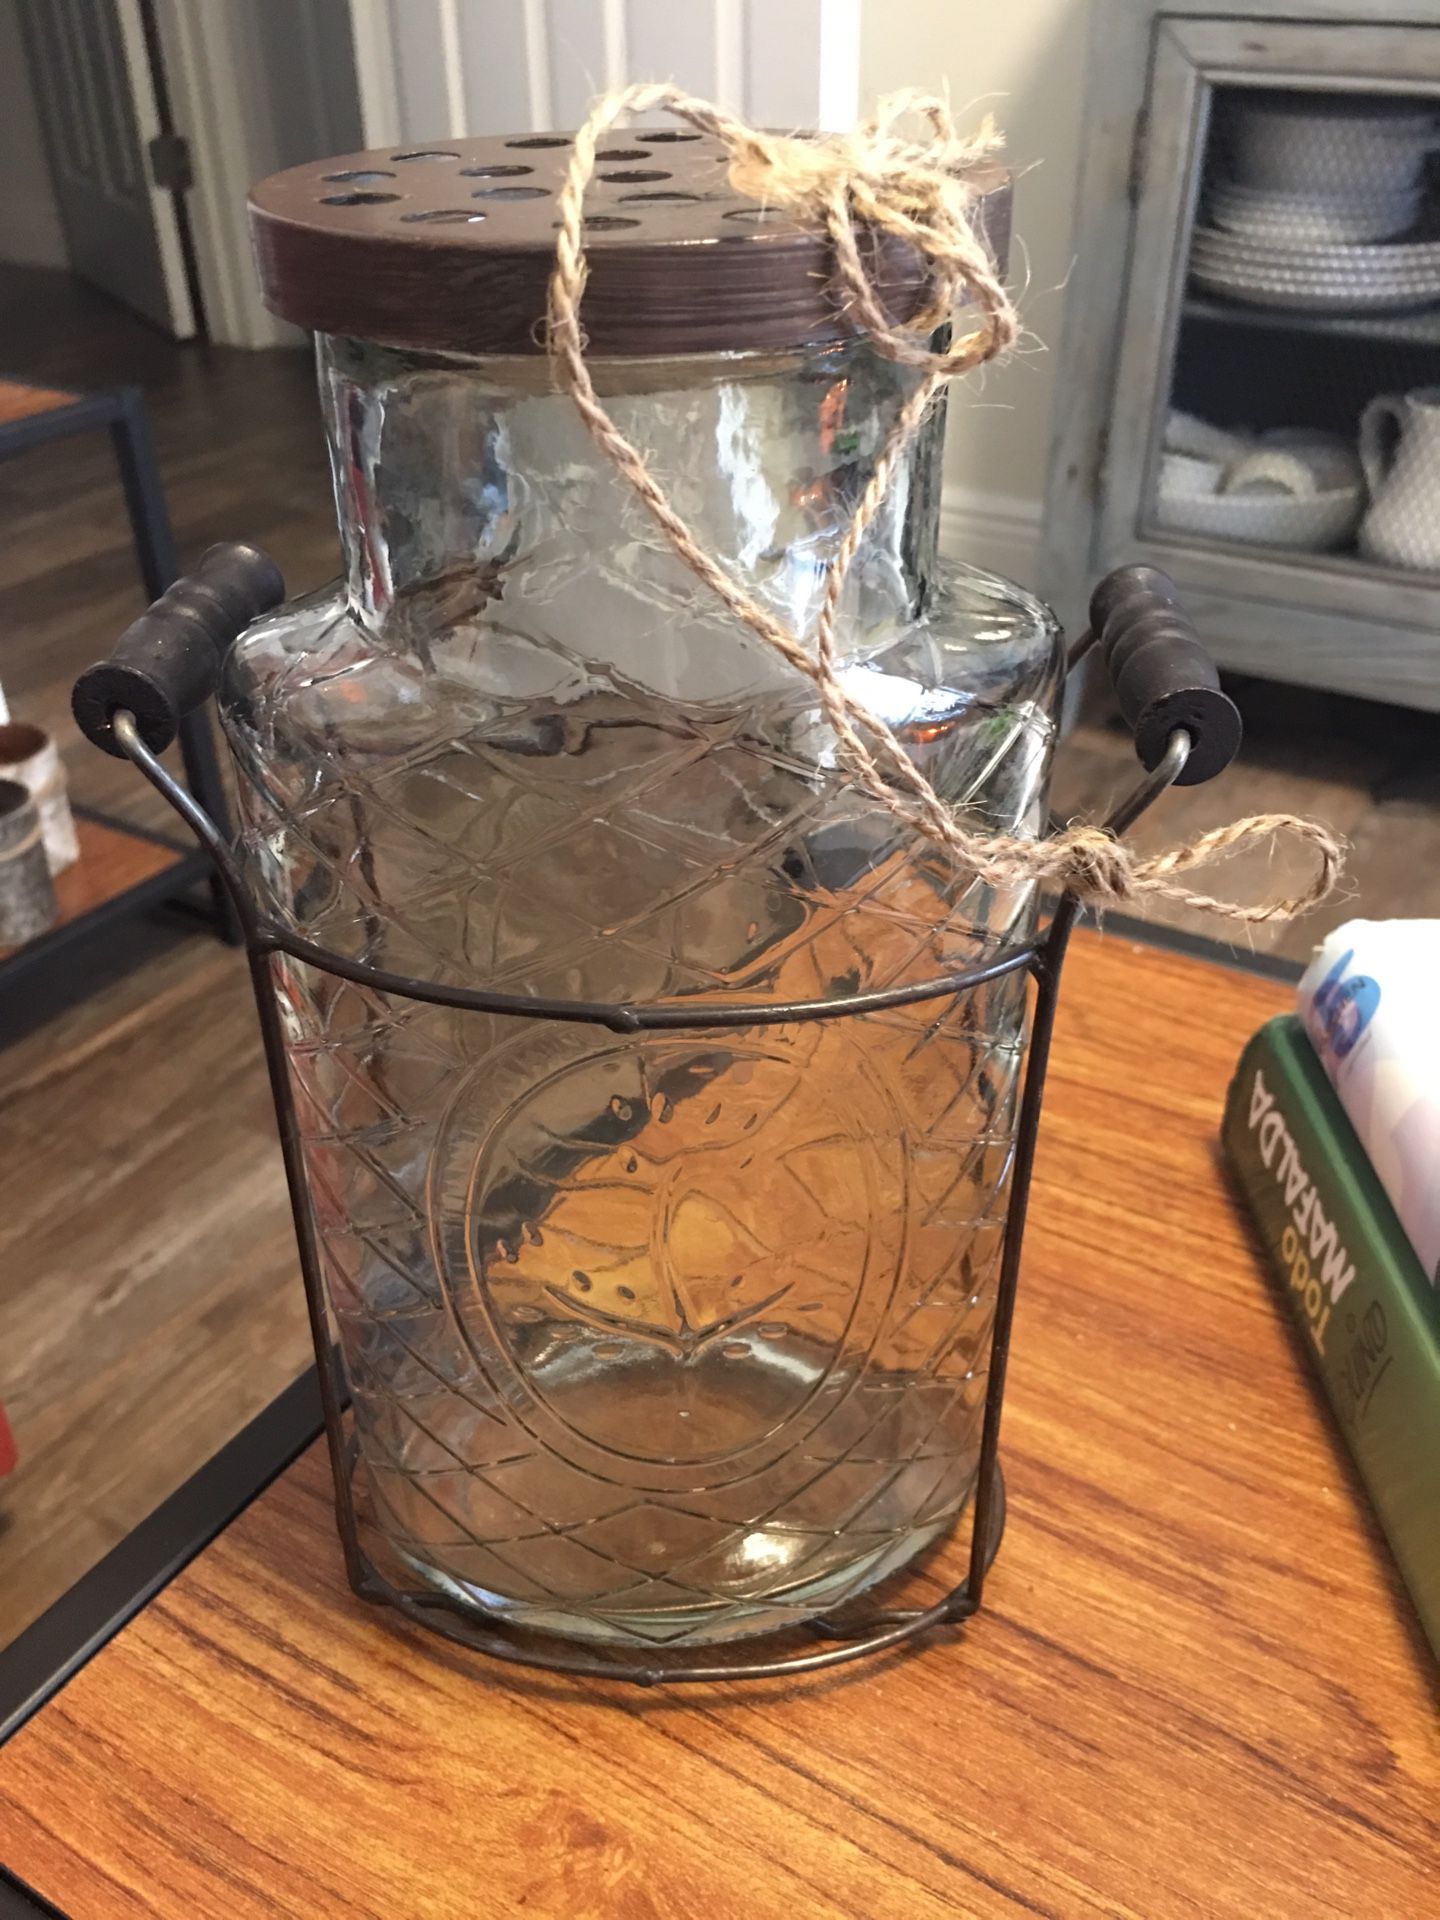 Farmhouse rustic glass vase for flowers. Rústico jarrón estilo granja